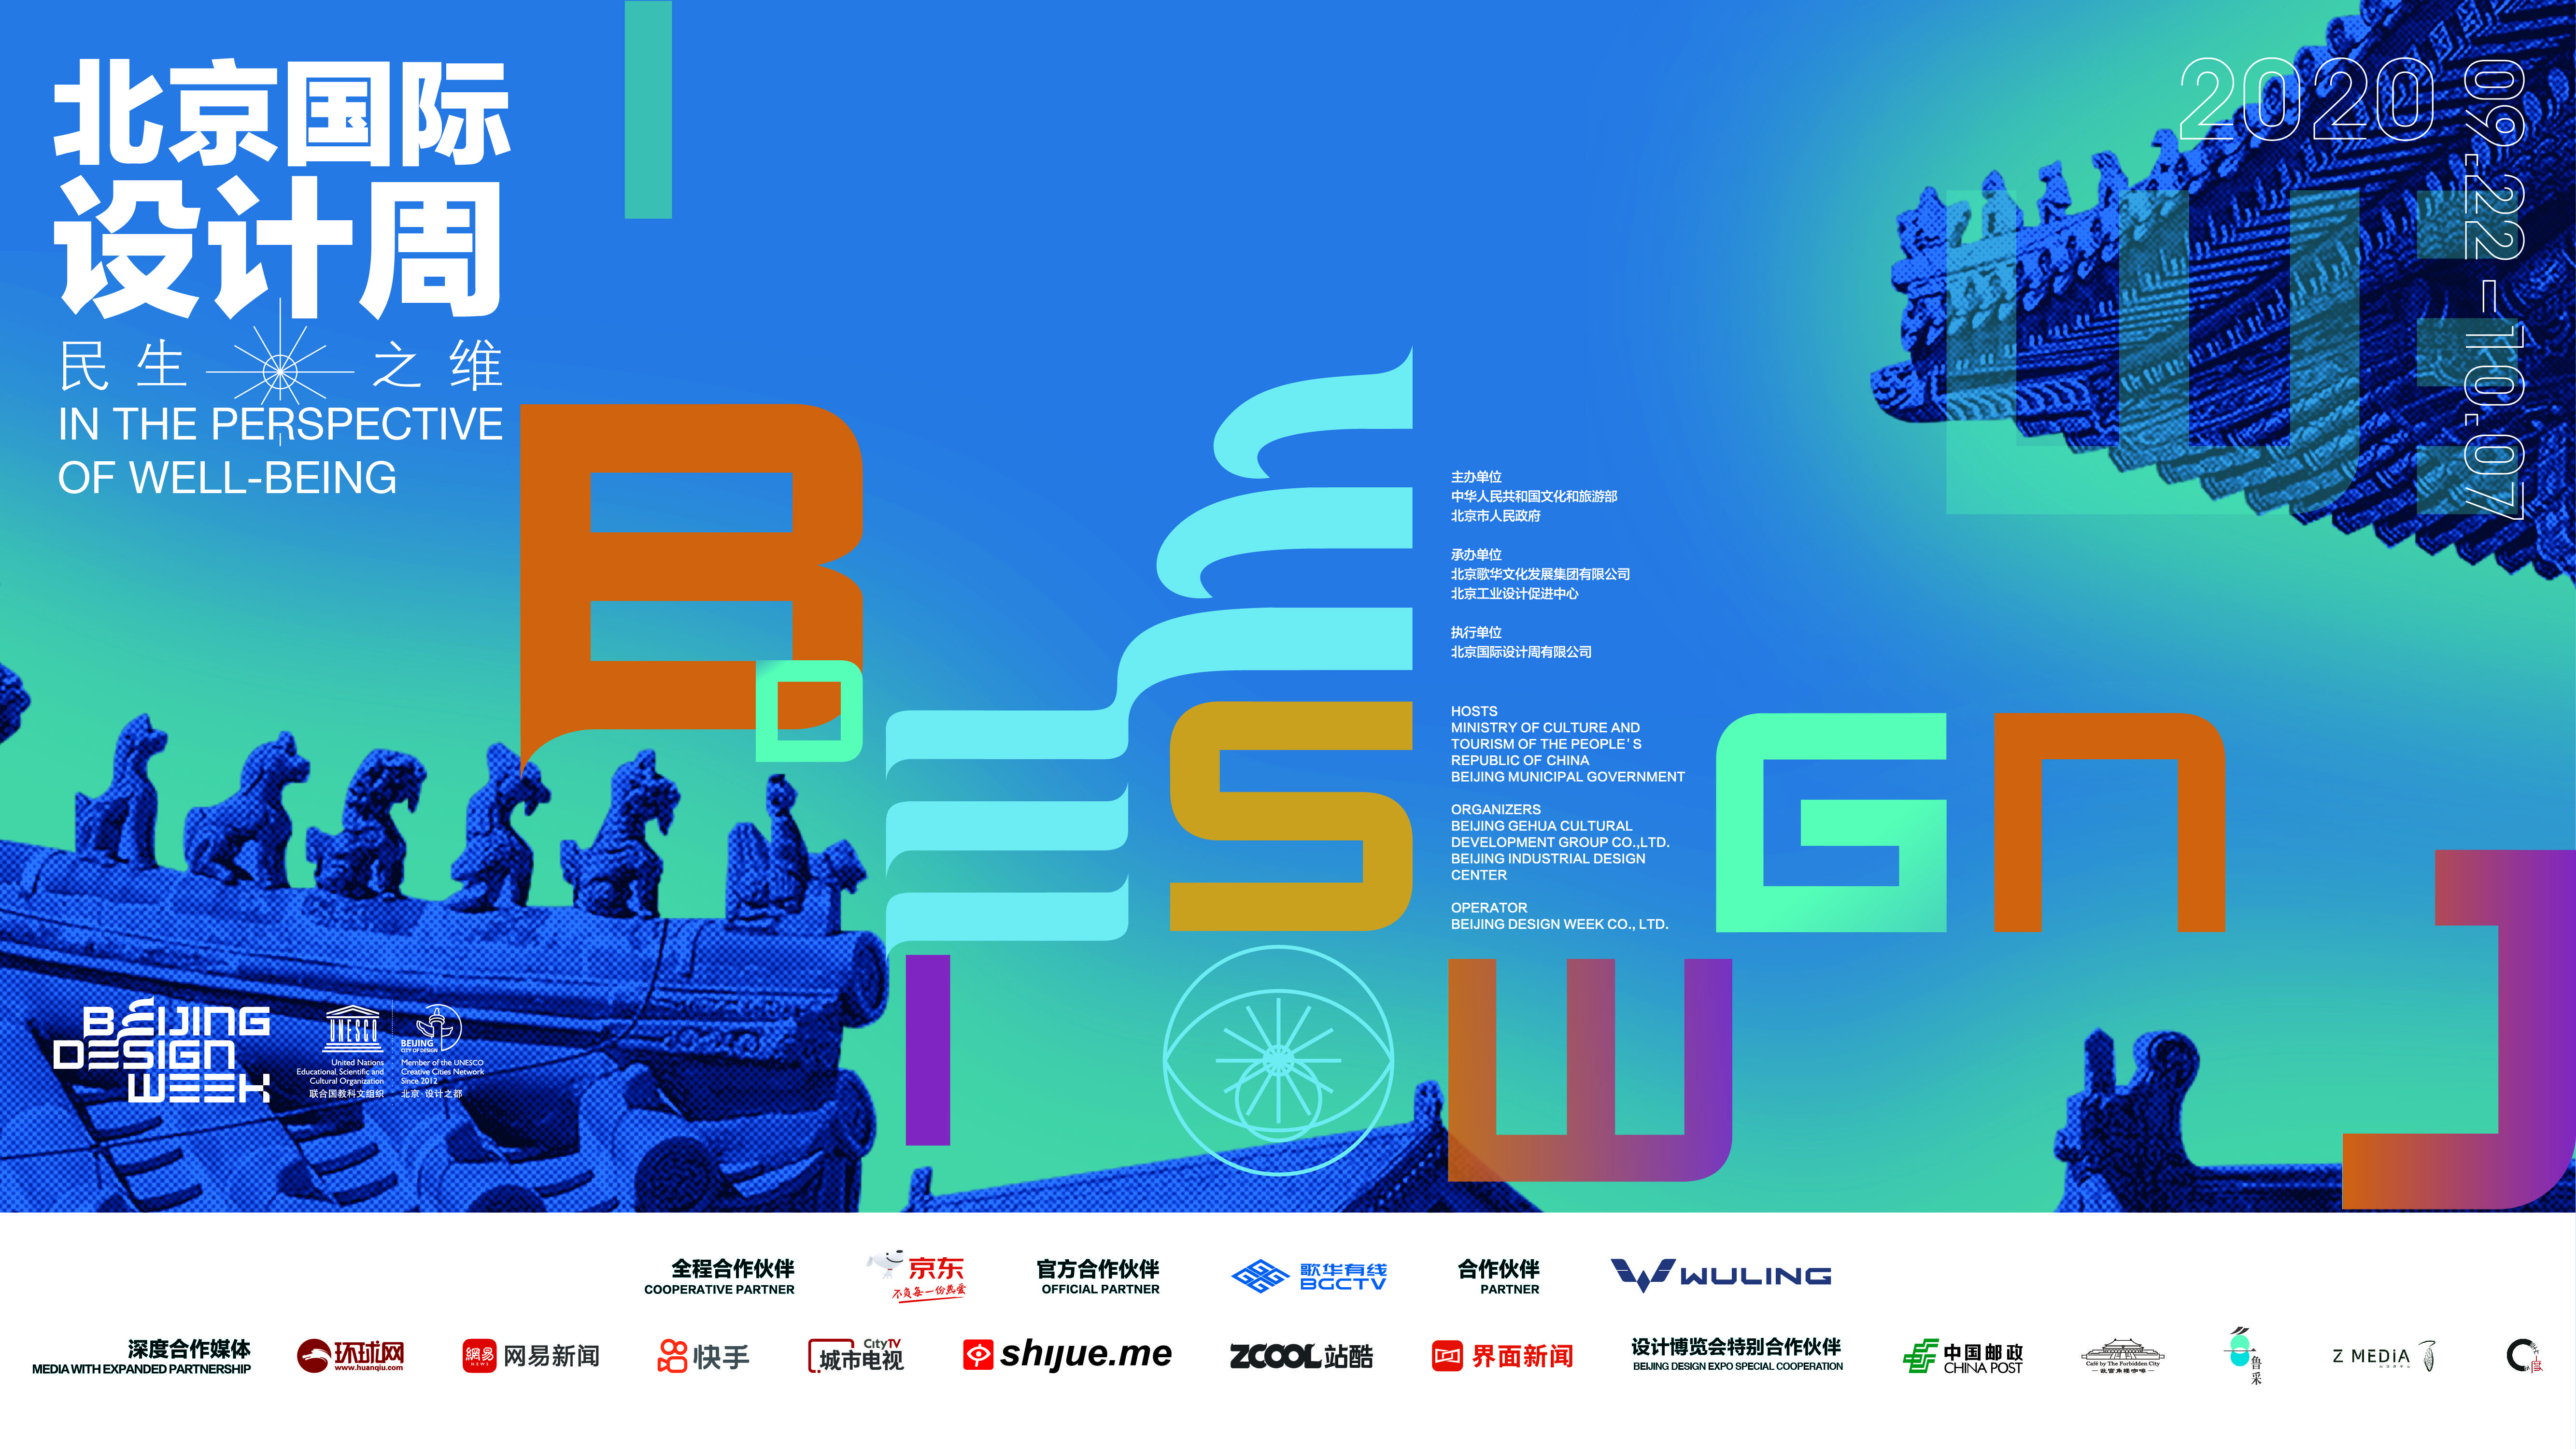 今年北京国际设计周将于9月22日至10月7日举行